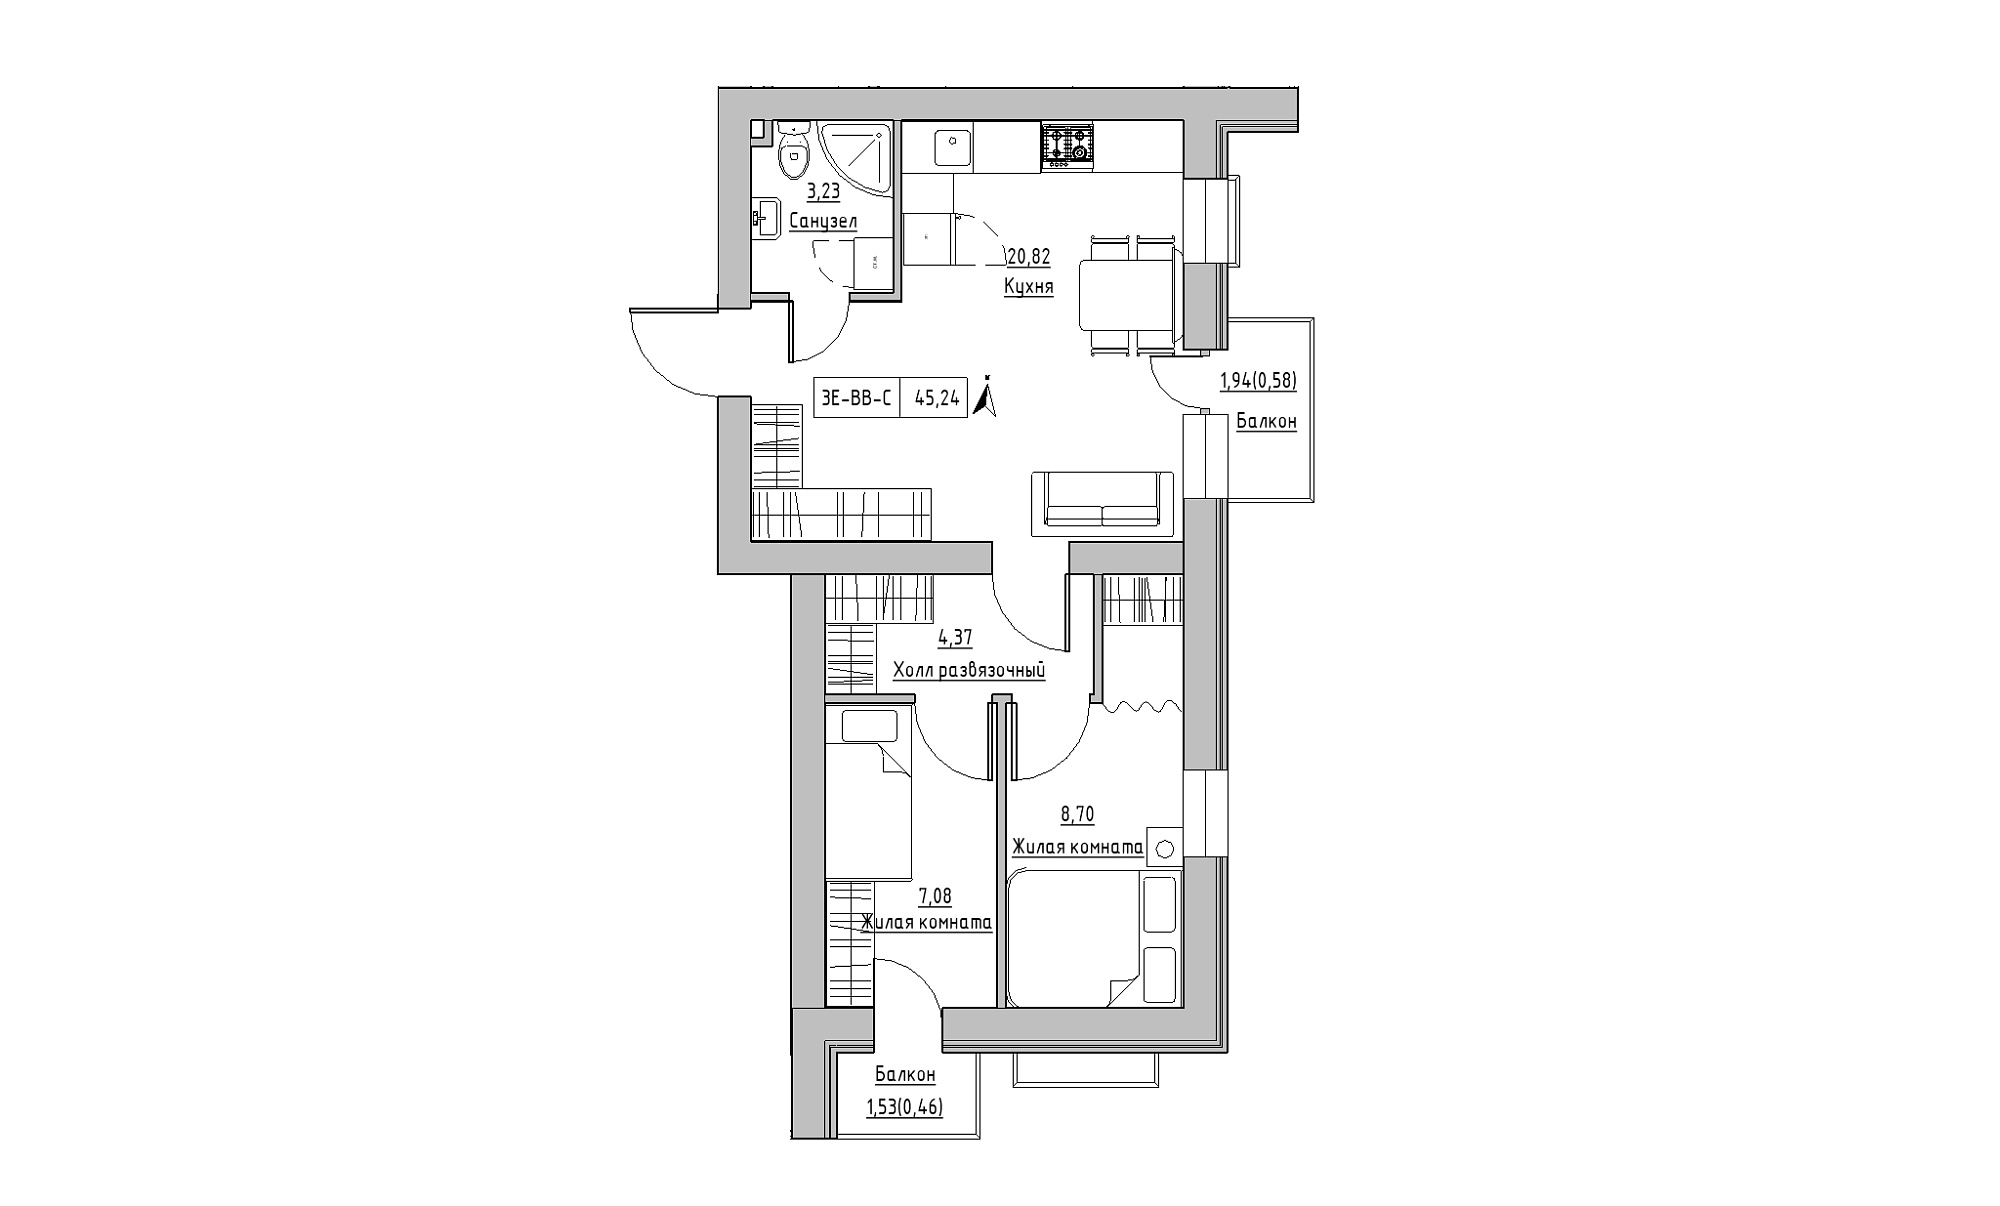 Планування 3-к квартира площею 45.24м2, KS-023-05/0008.